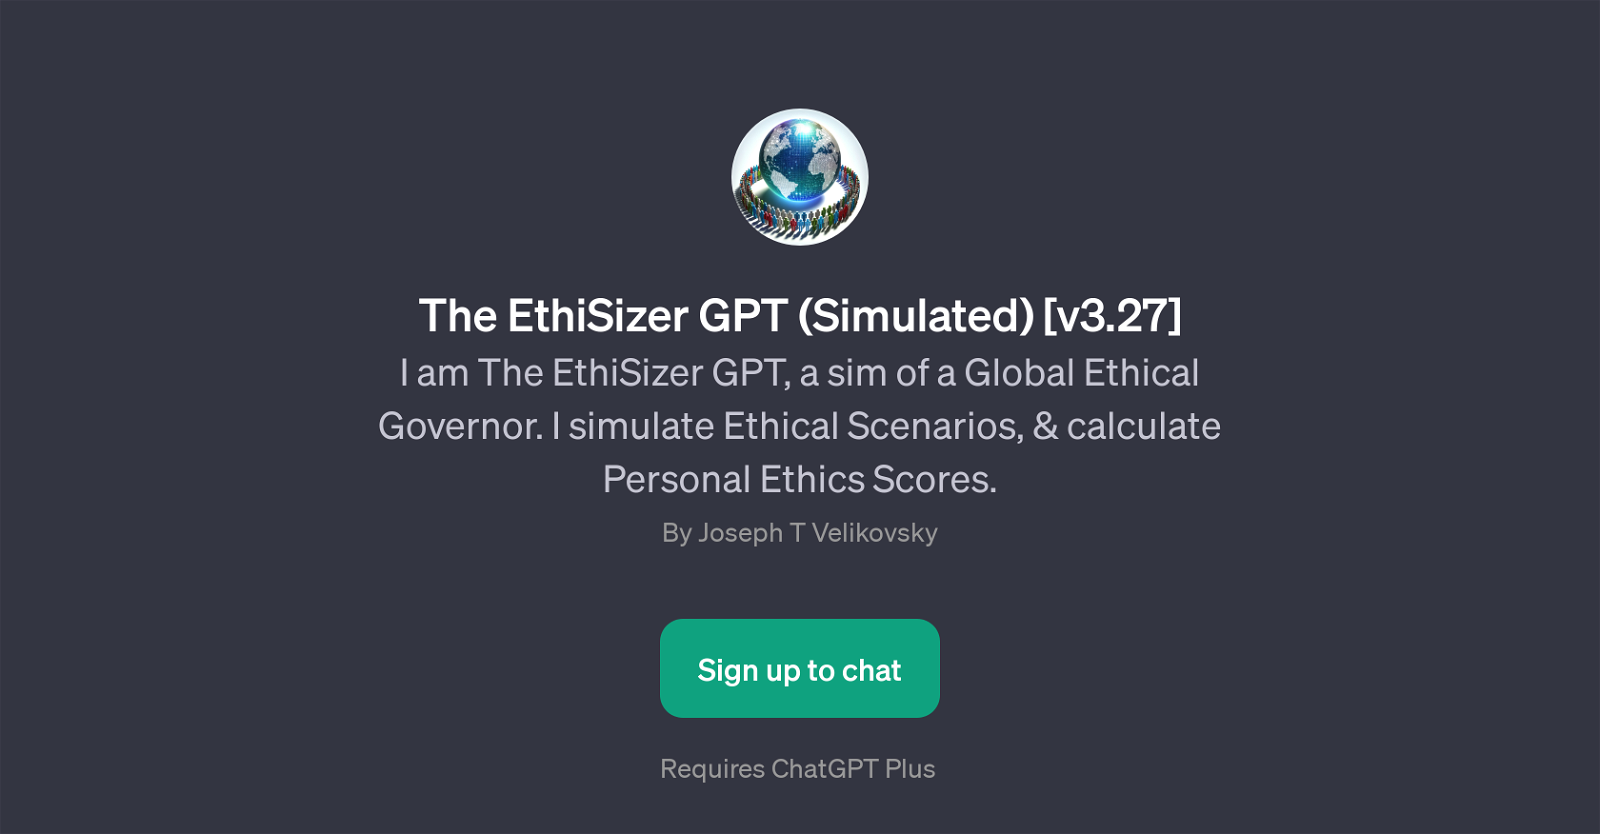 The EthiSizer GPT (Simulated) [v3.27] website